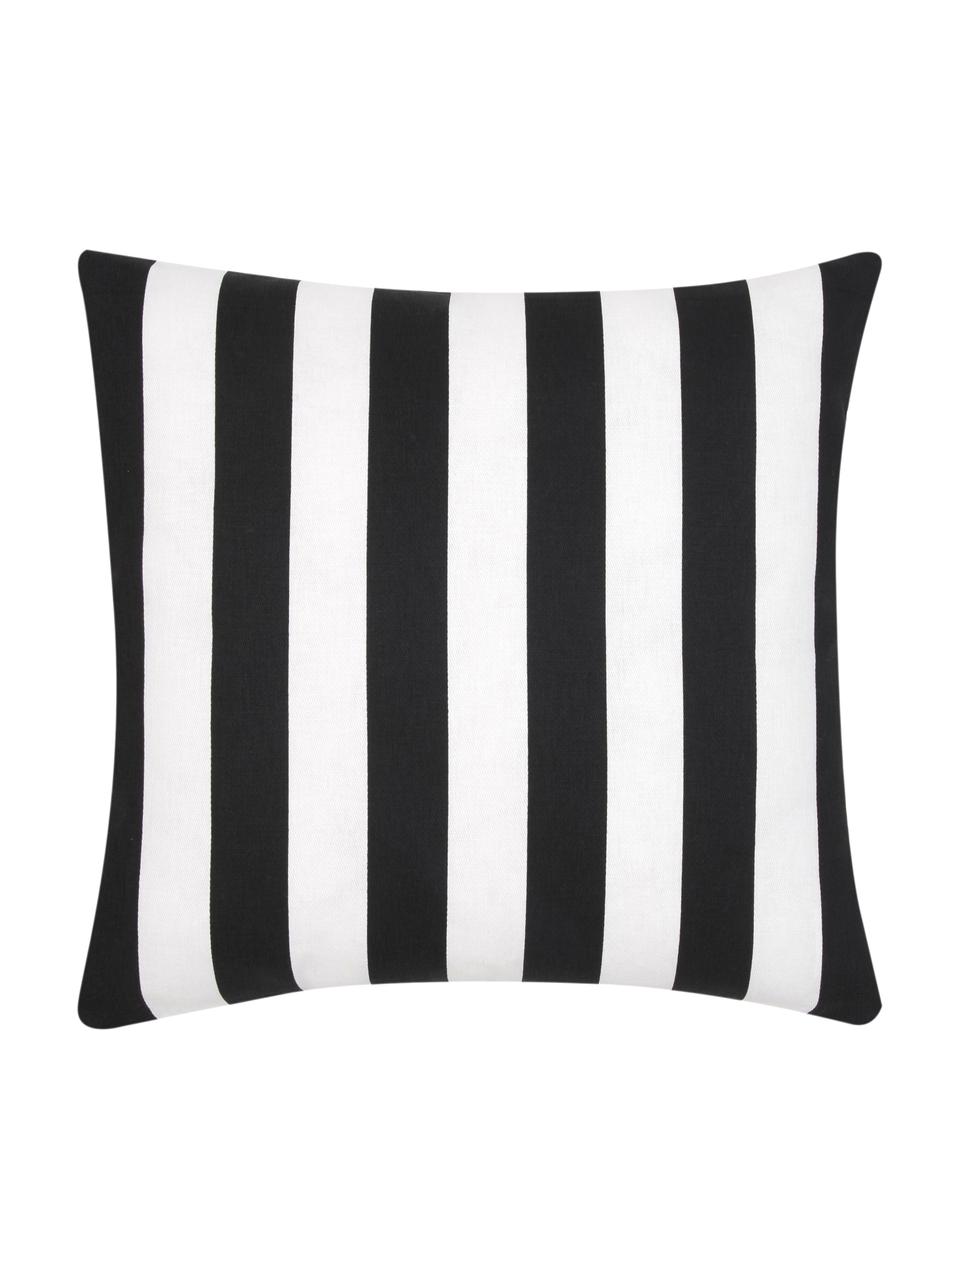 Poszewka na poduszkę Timon, 100% bawełna, Czarny, biały, S 40 x D 40 cm